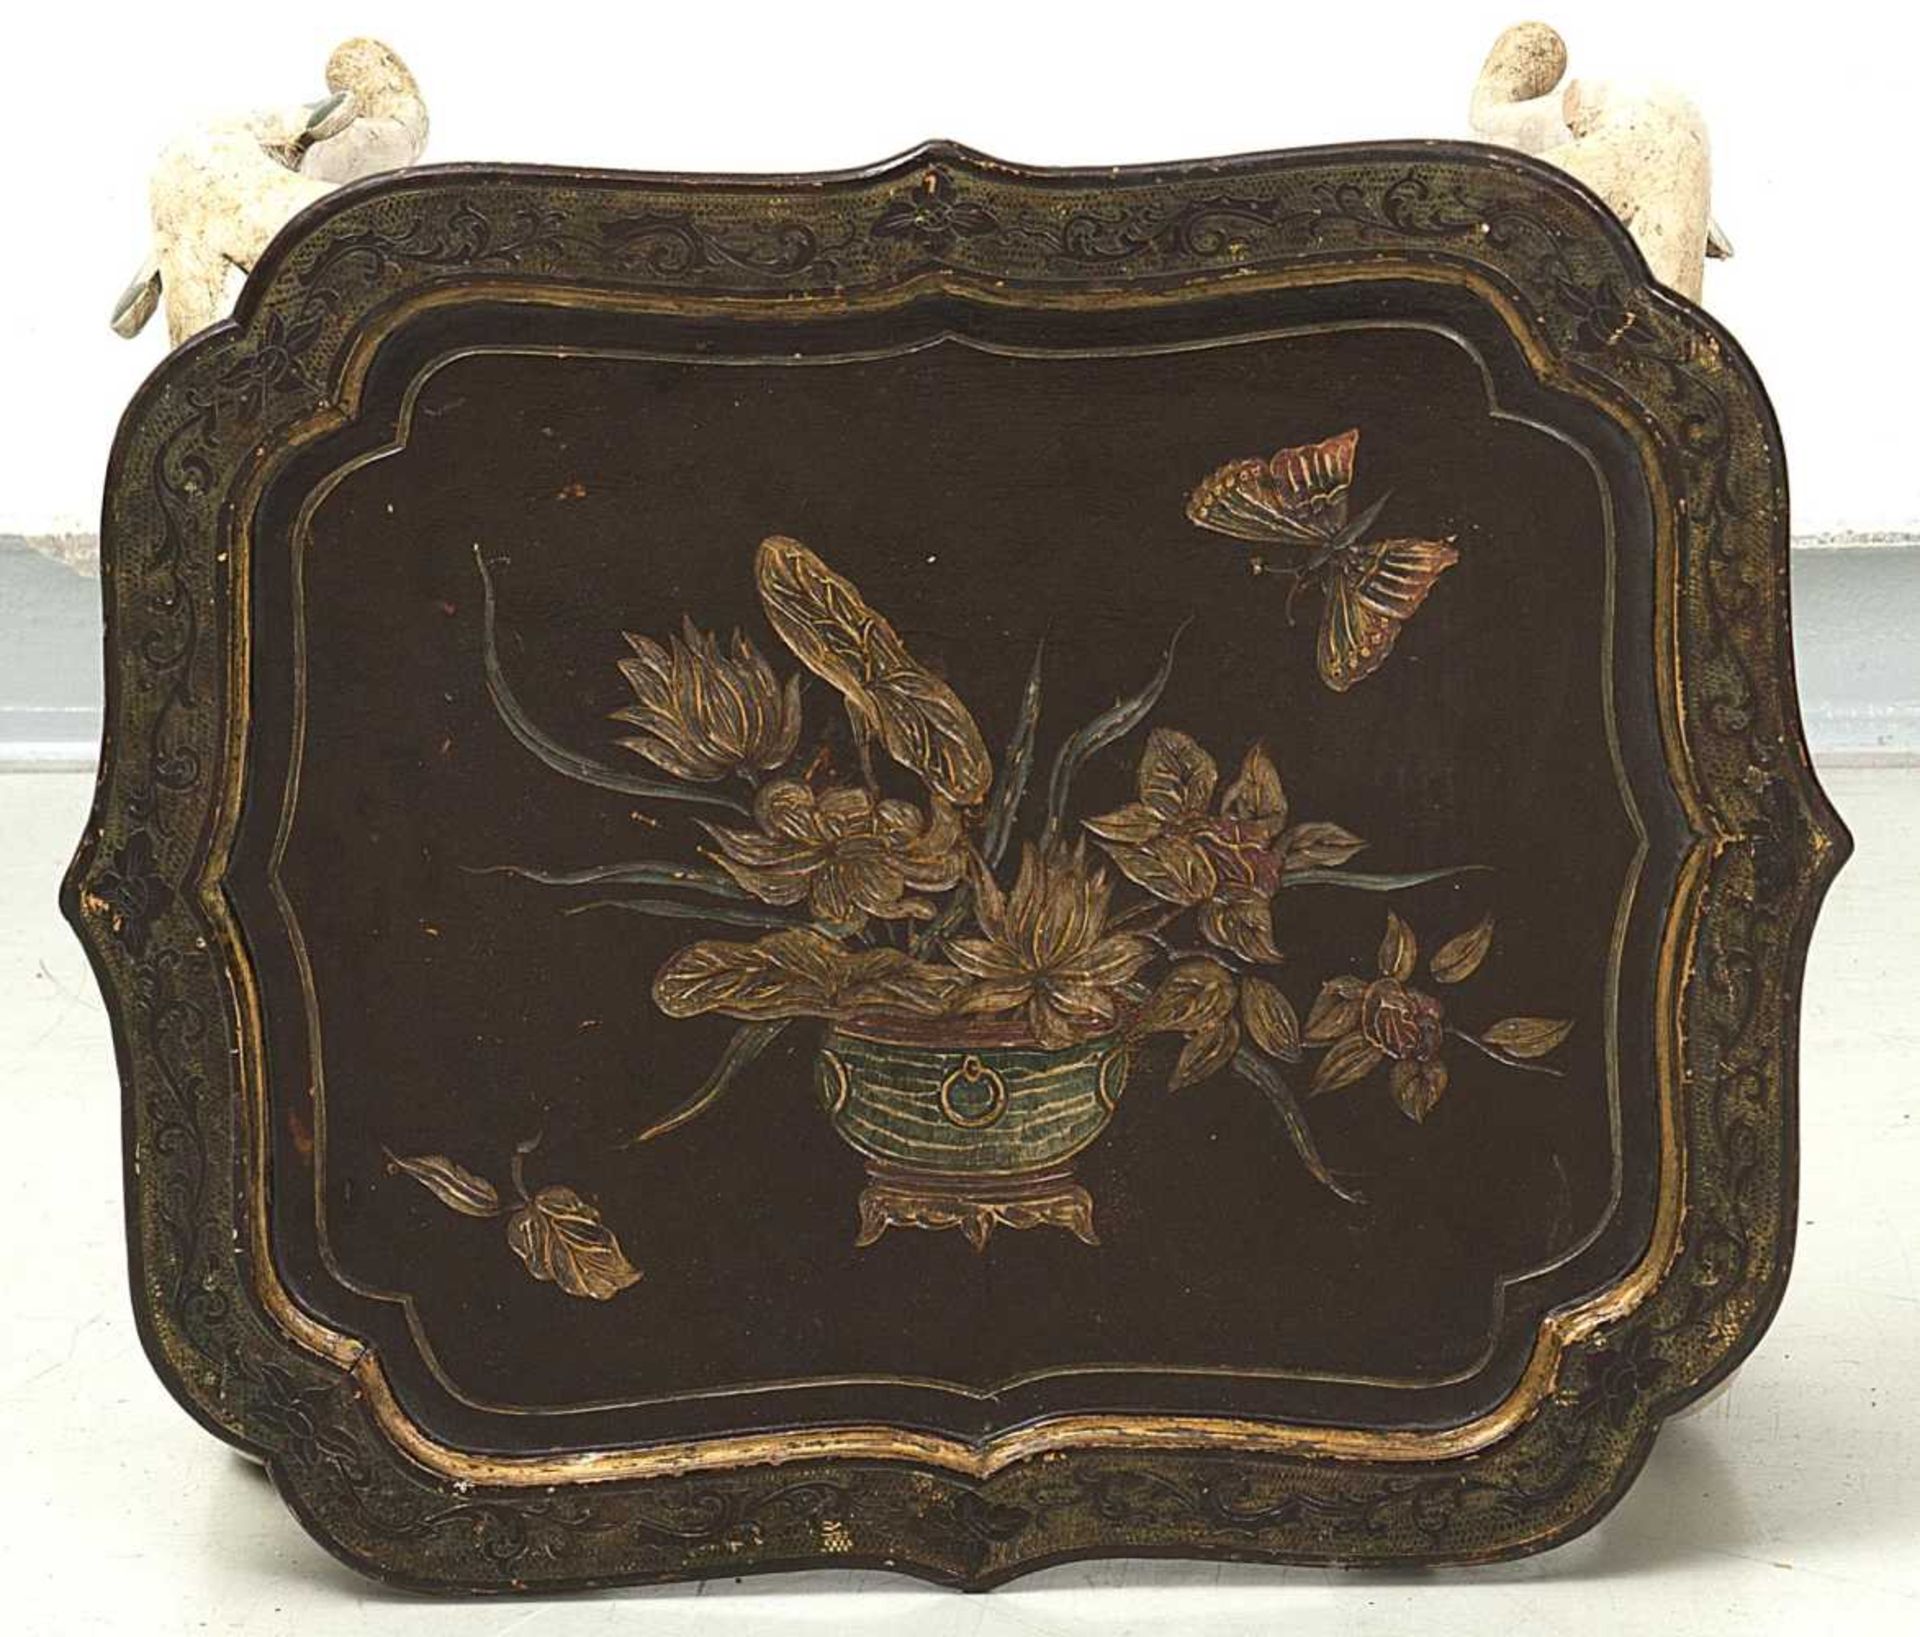 petite table de style baroque vénitienne à 4 pieds mouvementés , plateau laqué brun à décor gravé de - Image 2 of 2